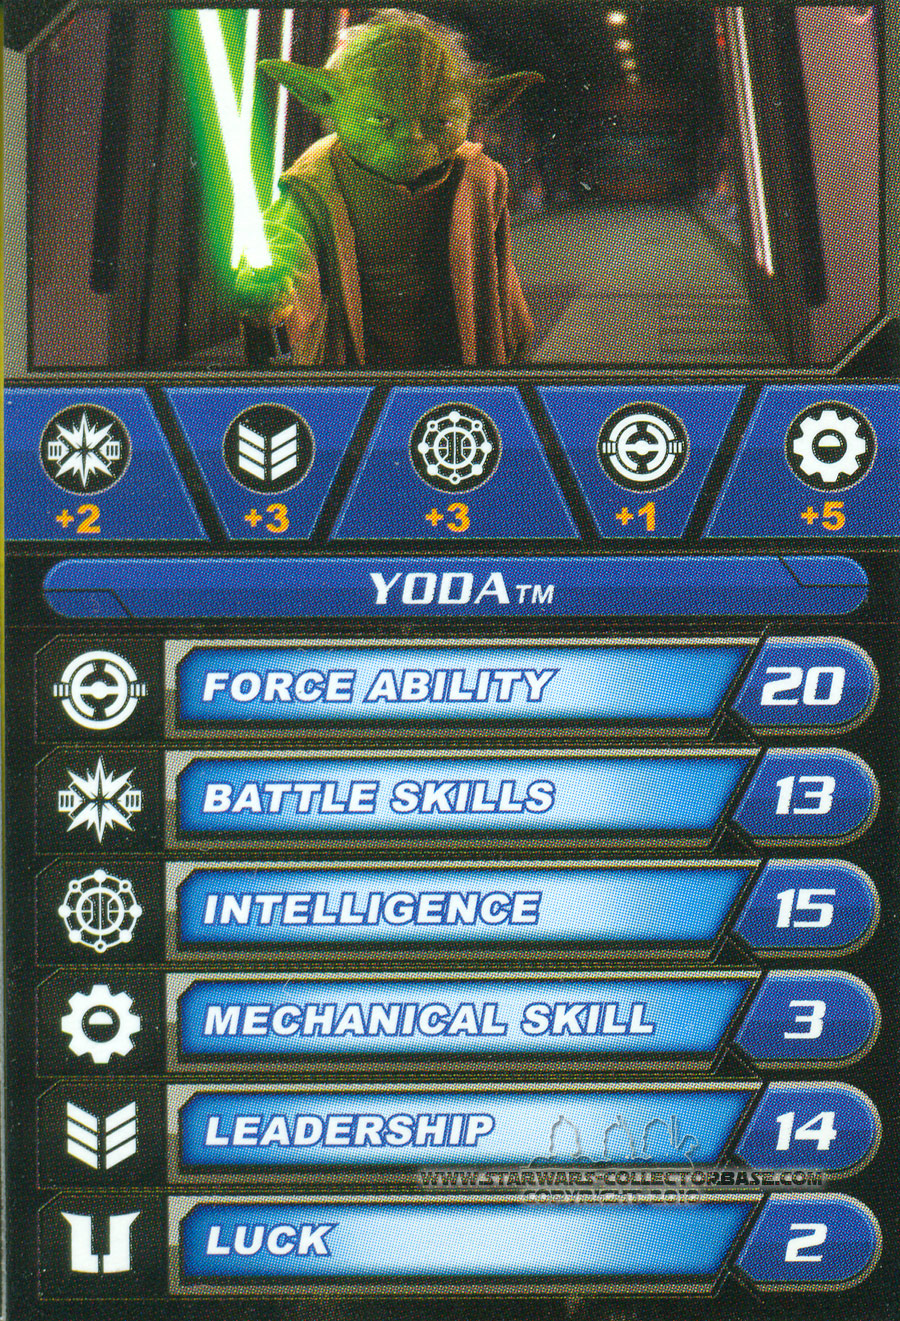 Yoda SL13 TVC Saga Legends